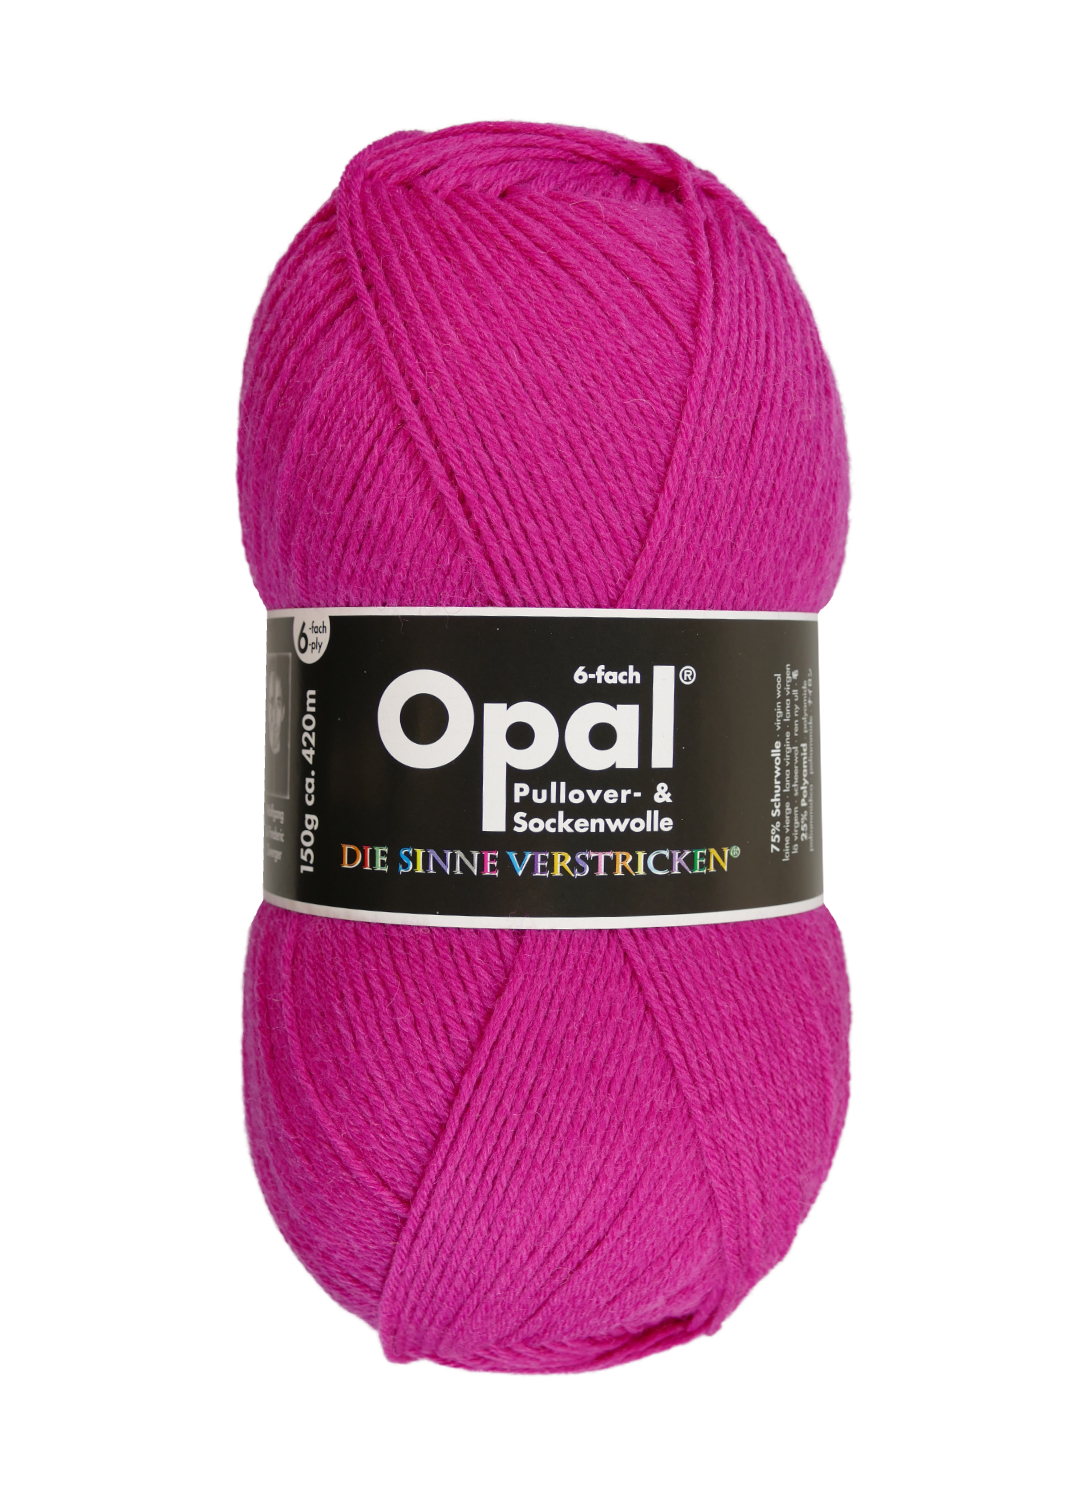 Sockenwolle Uni - 6-fach 150 g von OPAL 7901 - pink